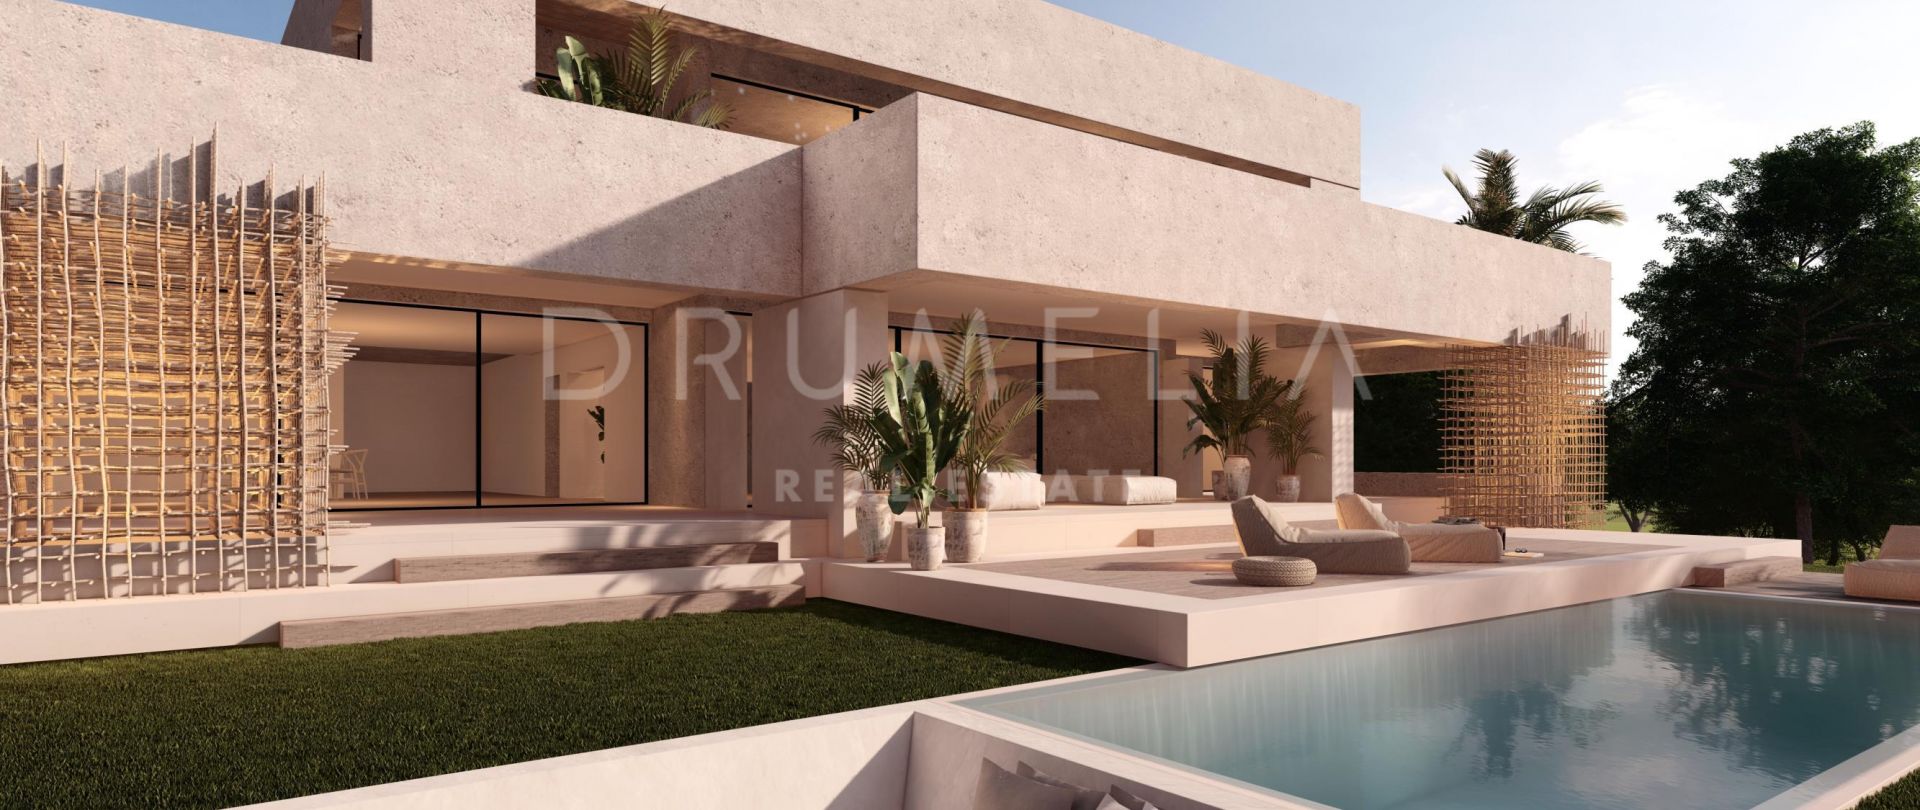 Nueva villa de estilo contemporáneo llave en mano en Nueva Andalucia, Marbella